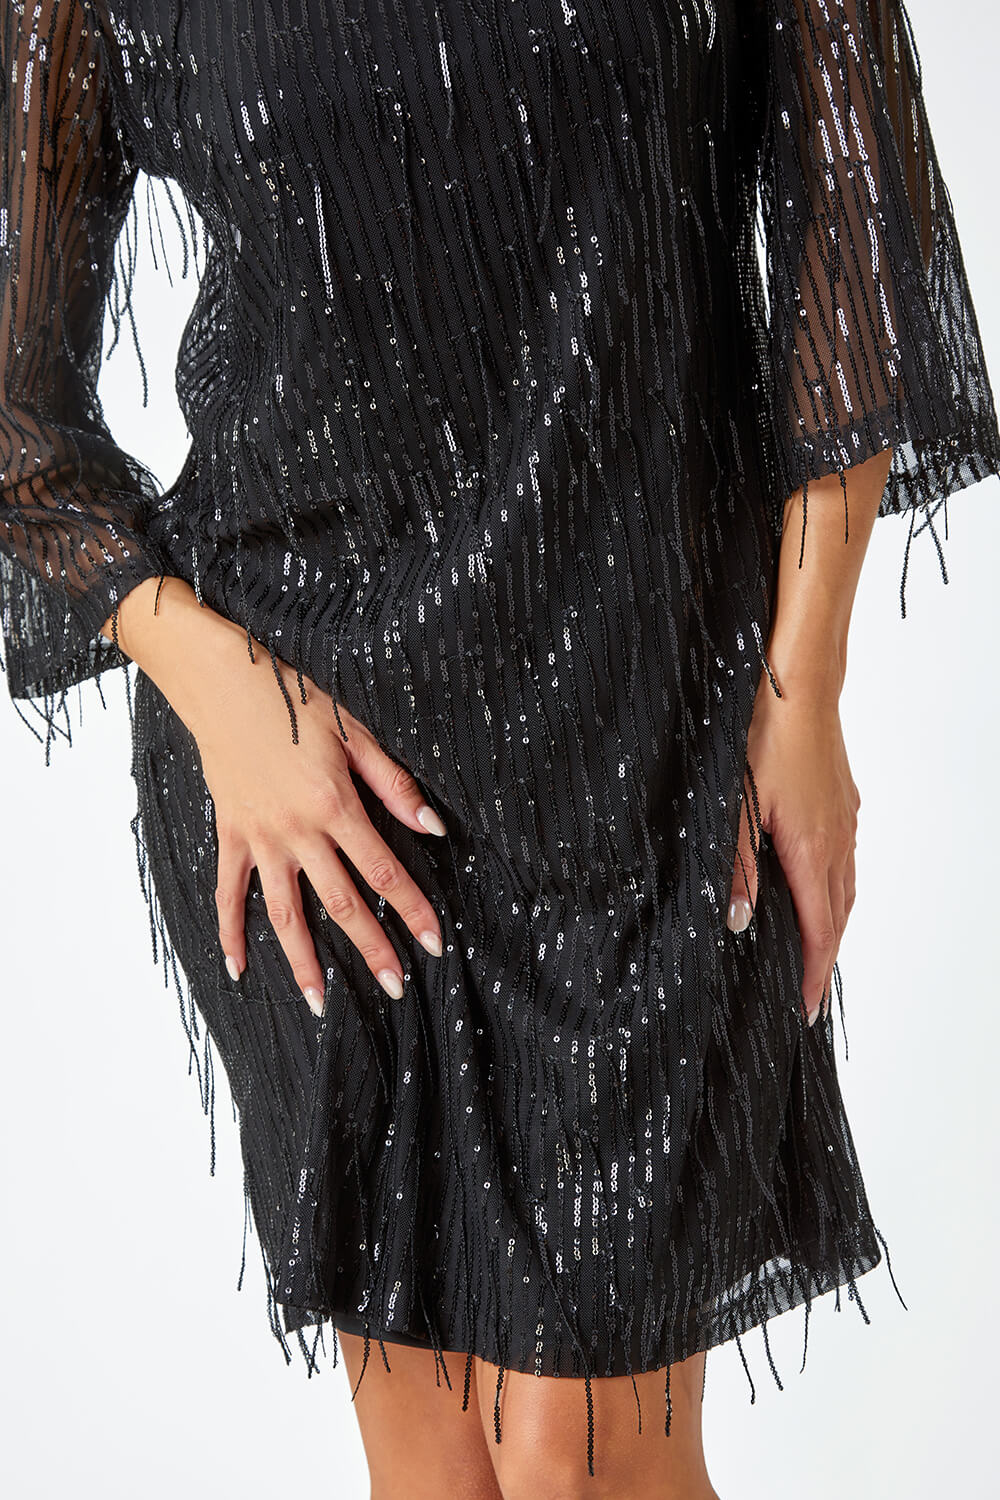 Black Sequin Sparkle Tassel Shift Dress, Image 5 of 5